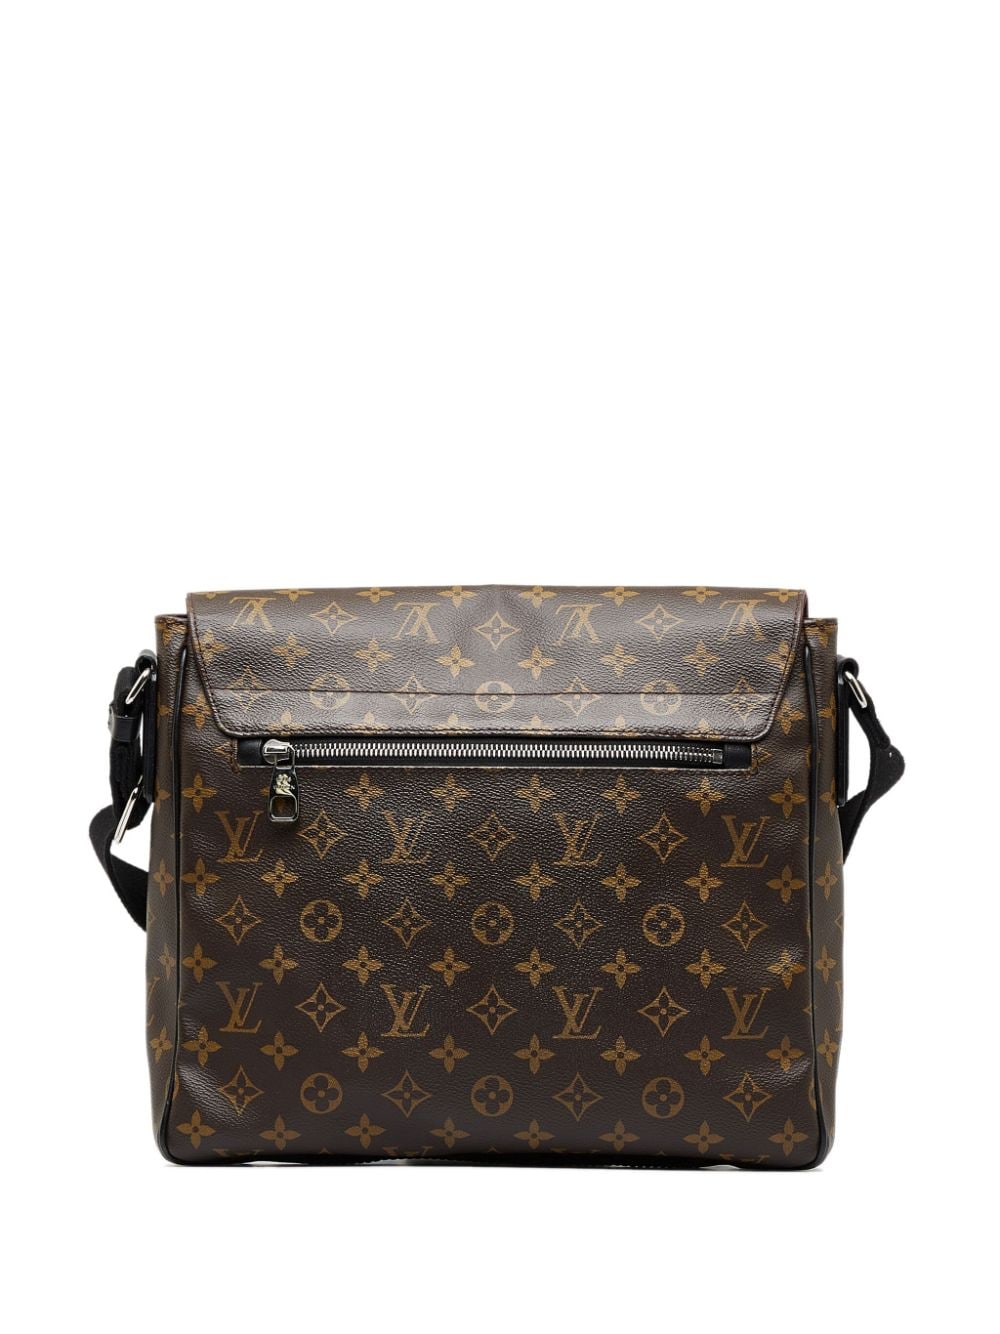 Louis Vuitton 2015 pre-owned Macassar District MM messenger bag - Bruin